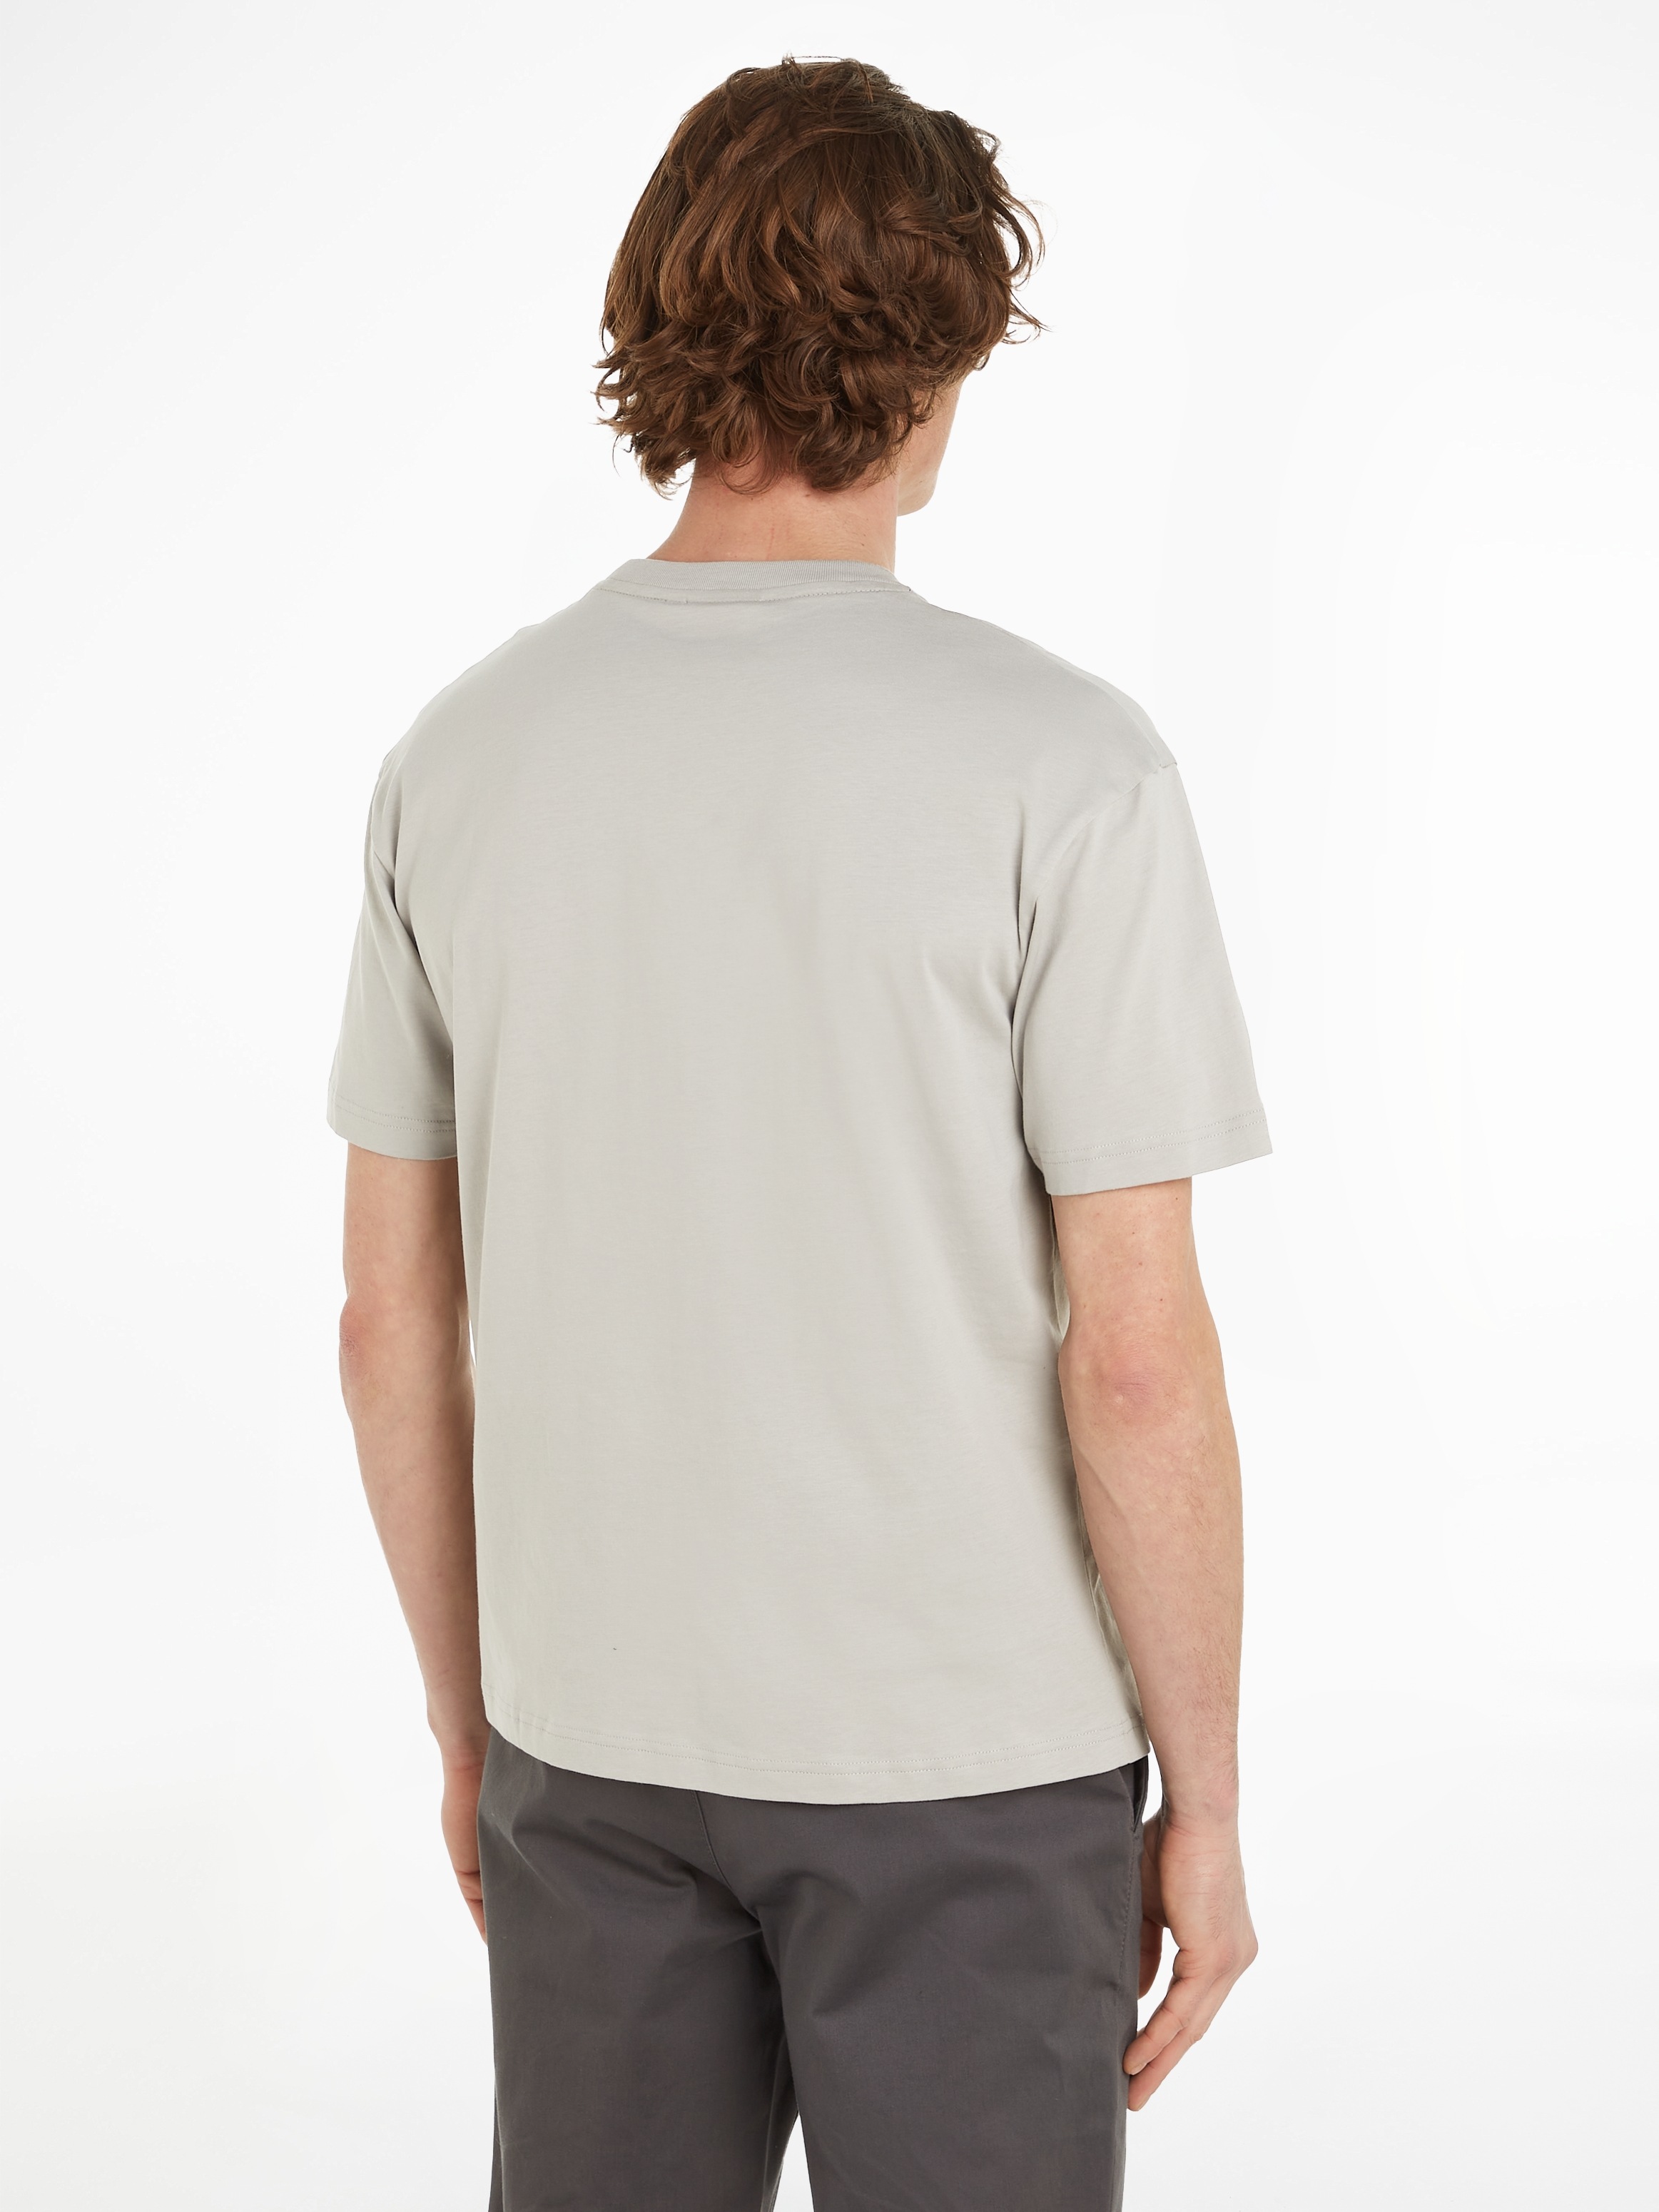 Calvin Klein T-Shirt »HERO LOGO COMFORT T-SHIRT«, mit aufgedrucktem  Markenlabel online bei